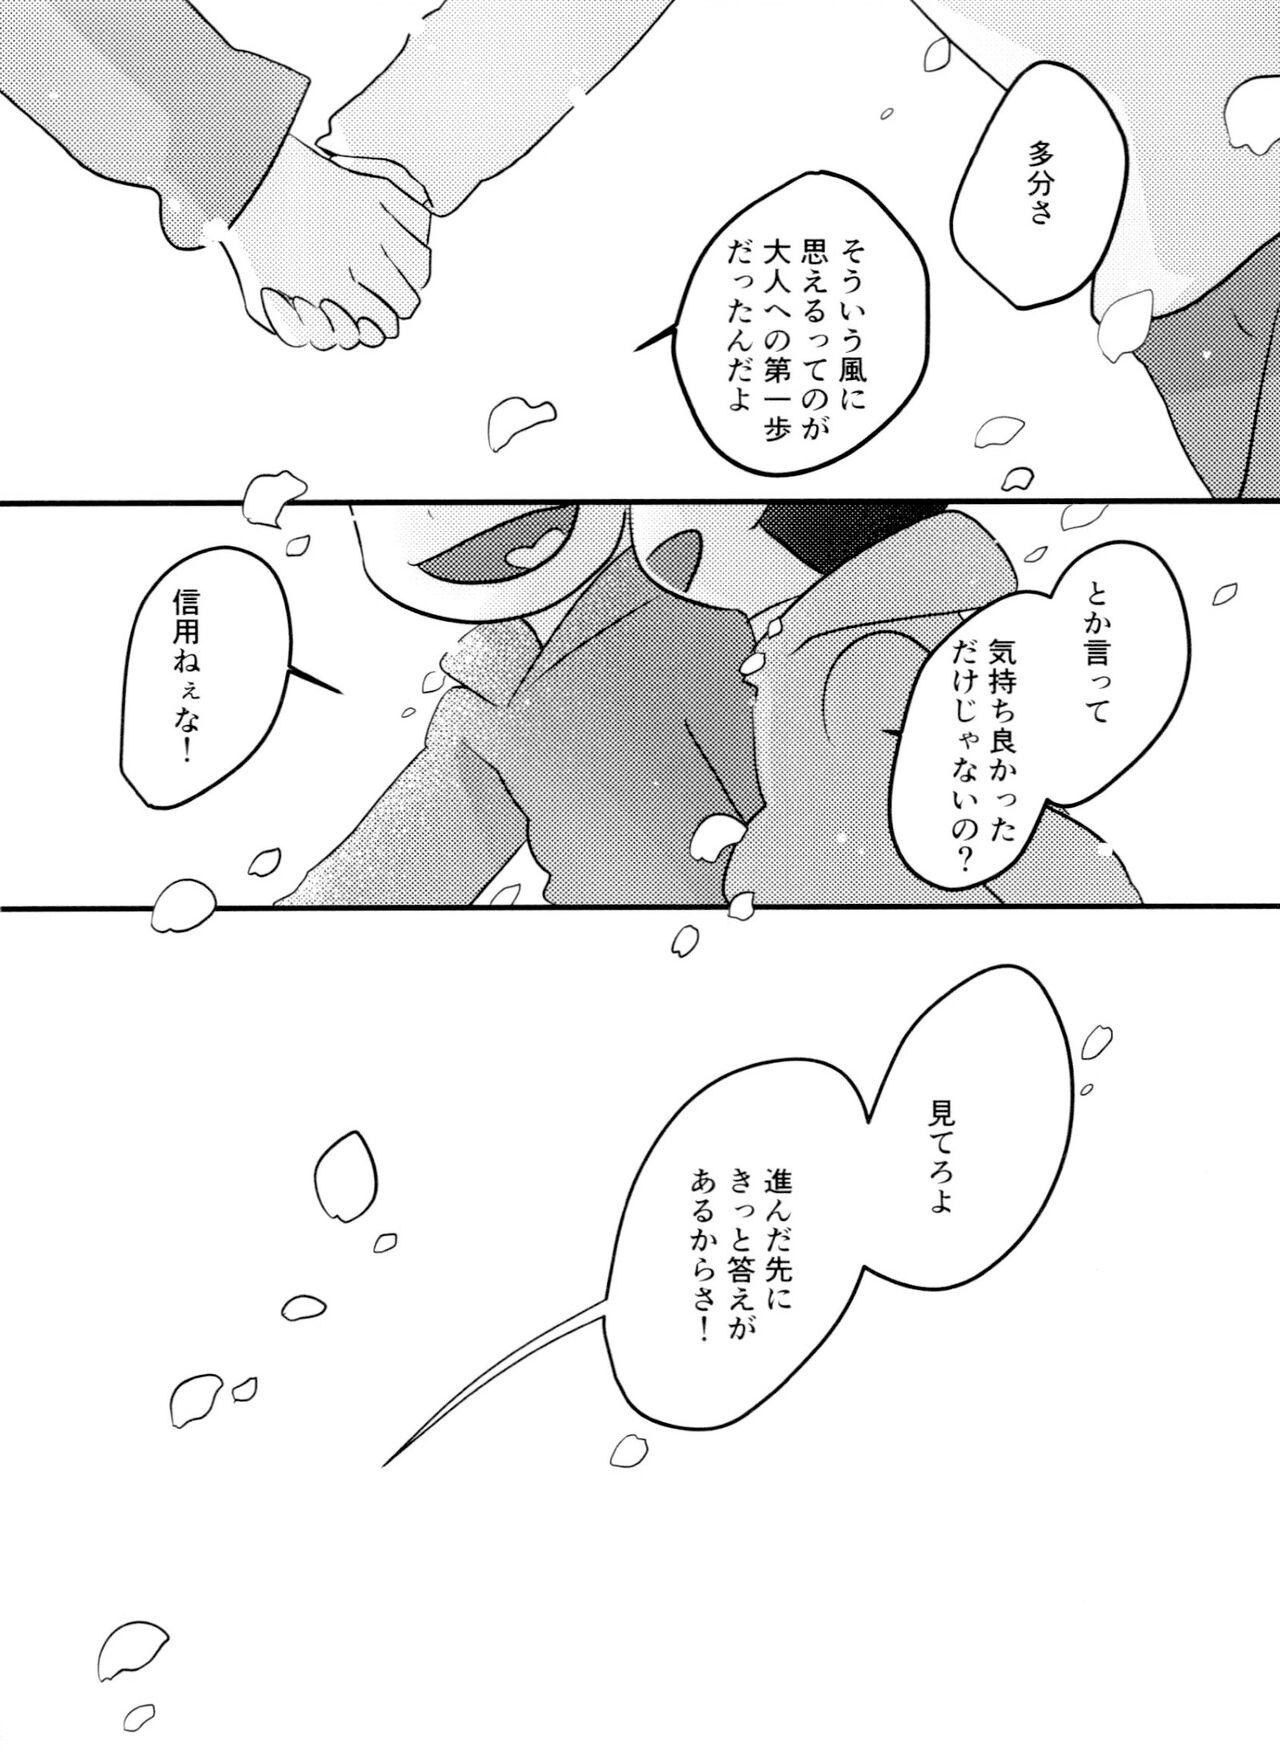 Vergon Kimi wa itsu kara otonana no!? - Osomatsu-san Cousin - Page 37